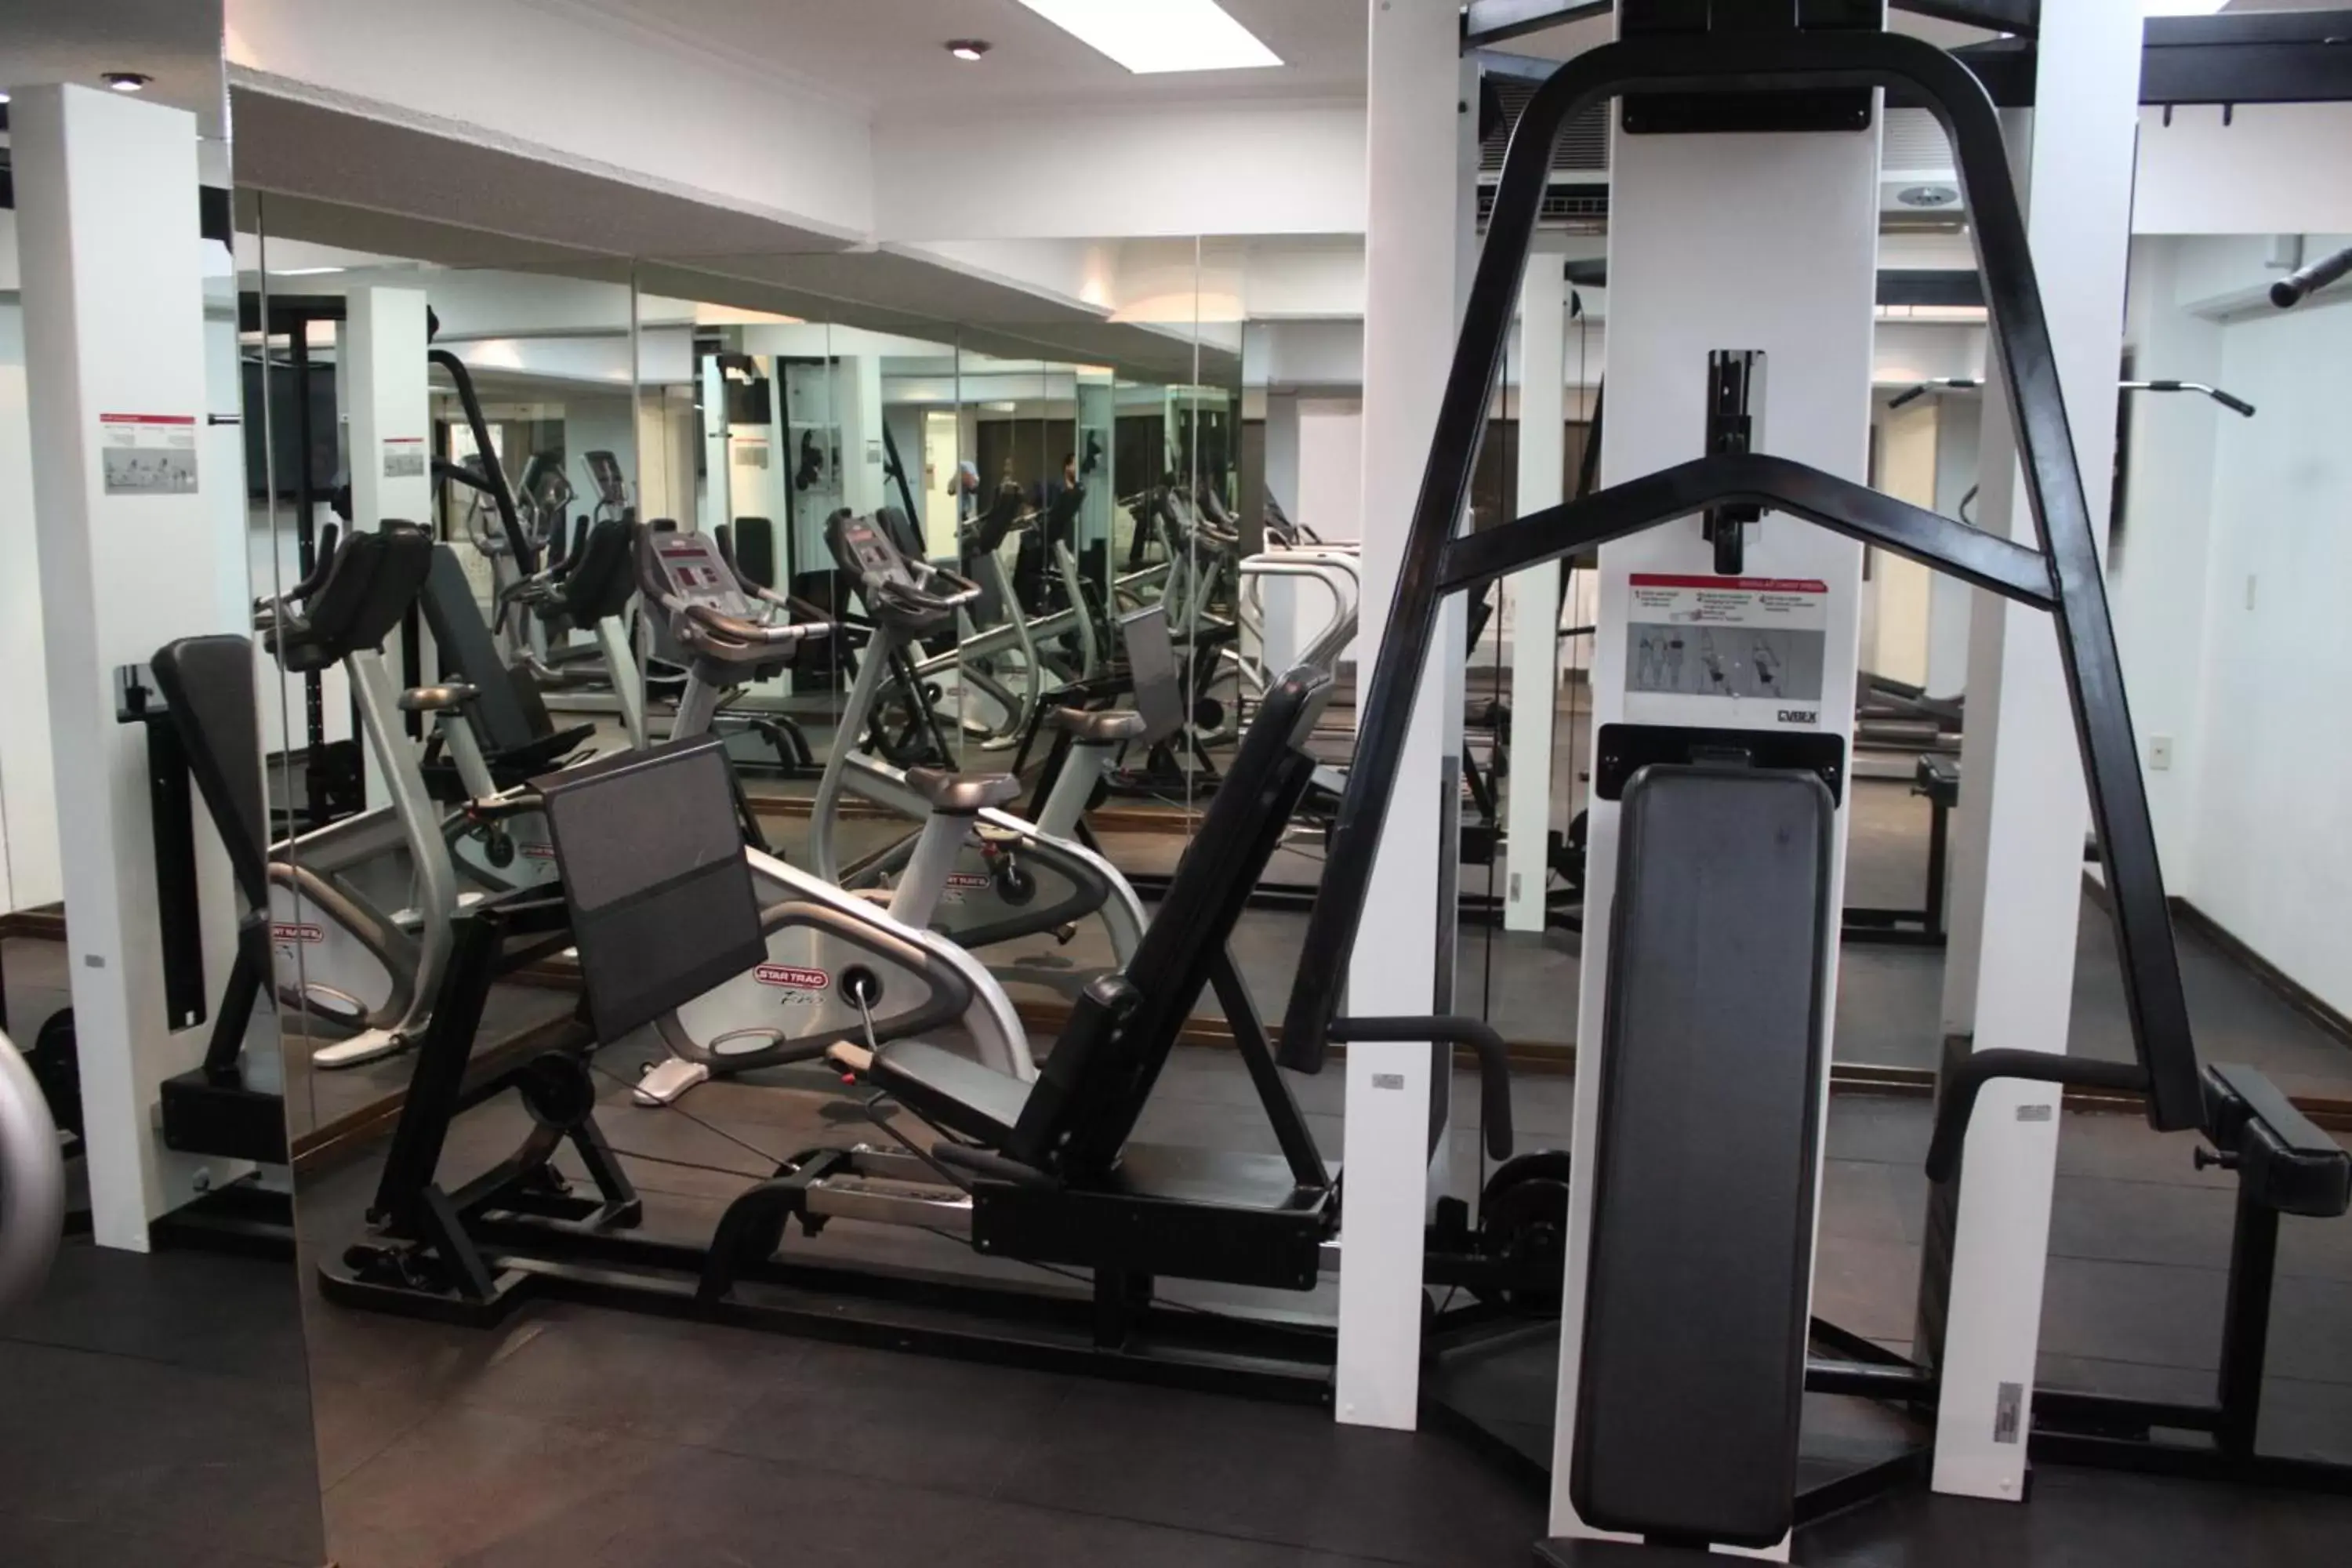 Fitness centre/facilities, Fitness Center/Facilities in Aranzazu Centro Historico